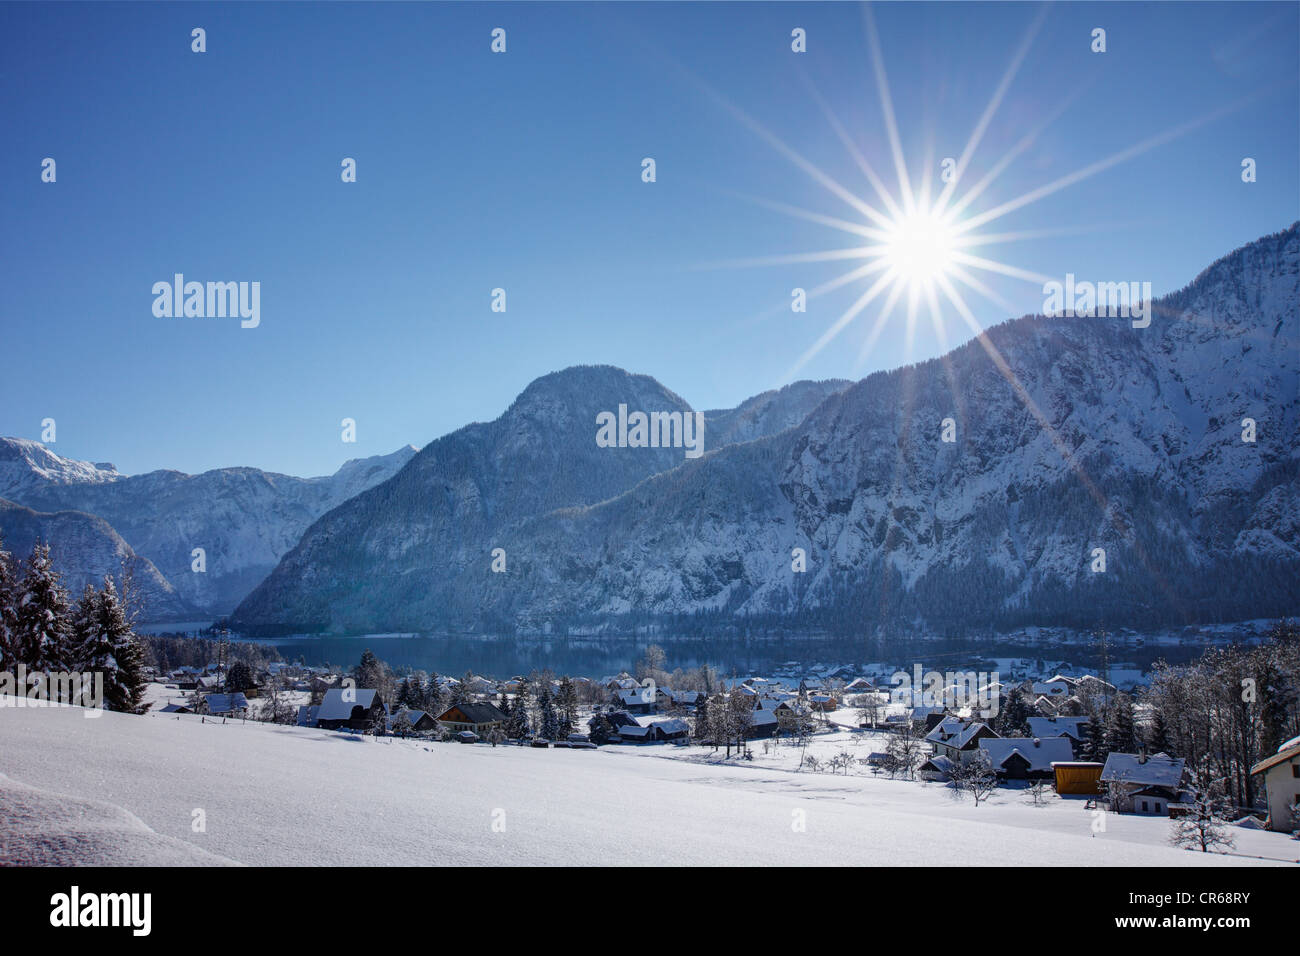 Austria, Upper Austria, View of Lake Hallstatt Stock Photo